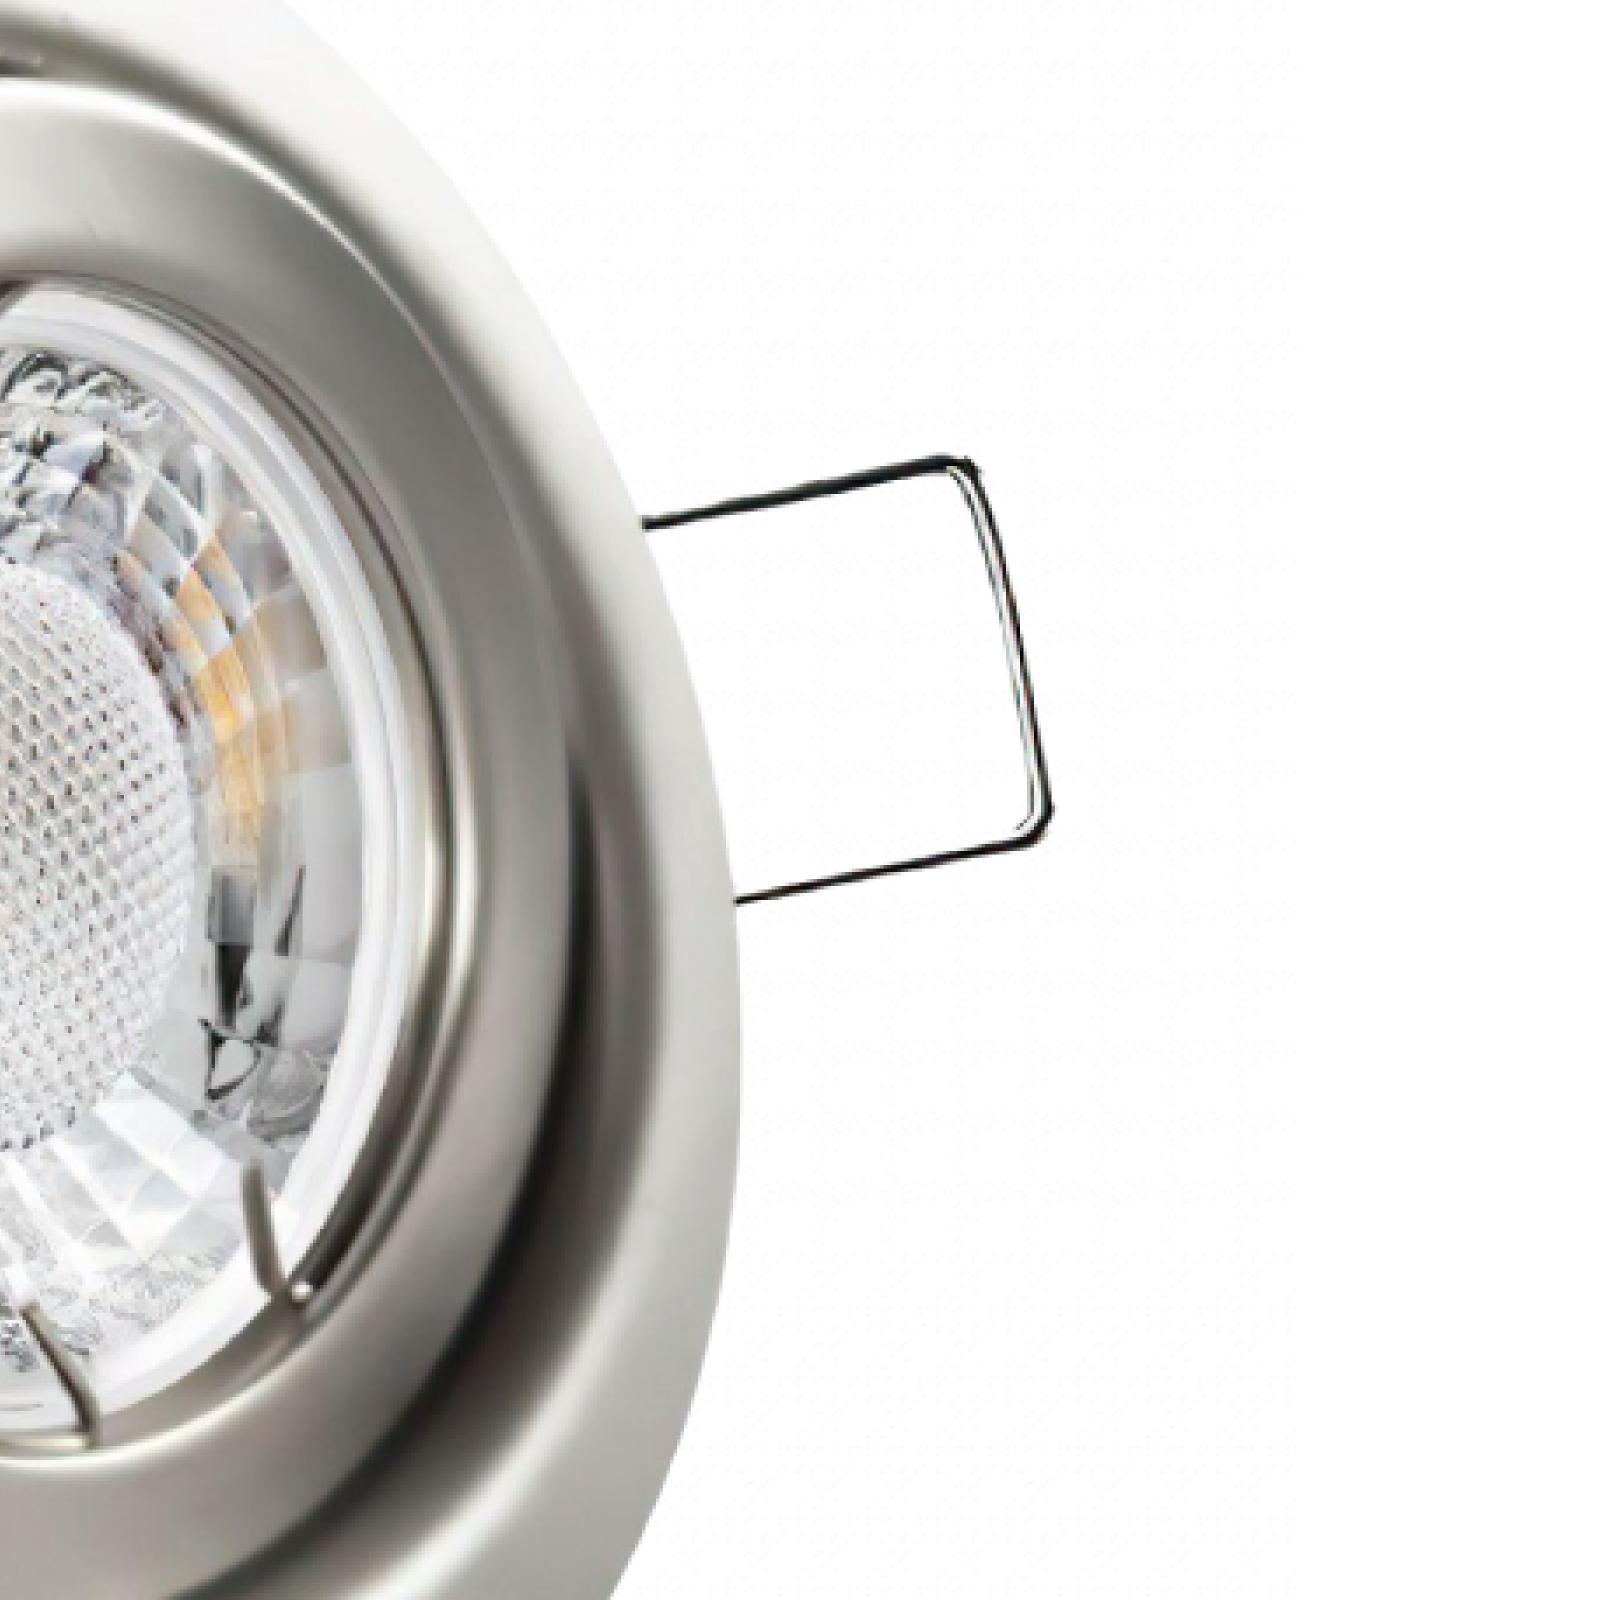 LED Einbaustrahler Edelstahl gebürstet | Runder Einbauspot | 360° schwenkbar | Lochmaß Ø 78mm - 85mm | geringe Einbautiefe 24mm | Anschlussfertig 